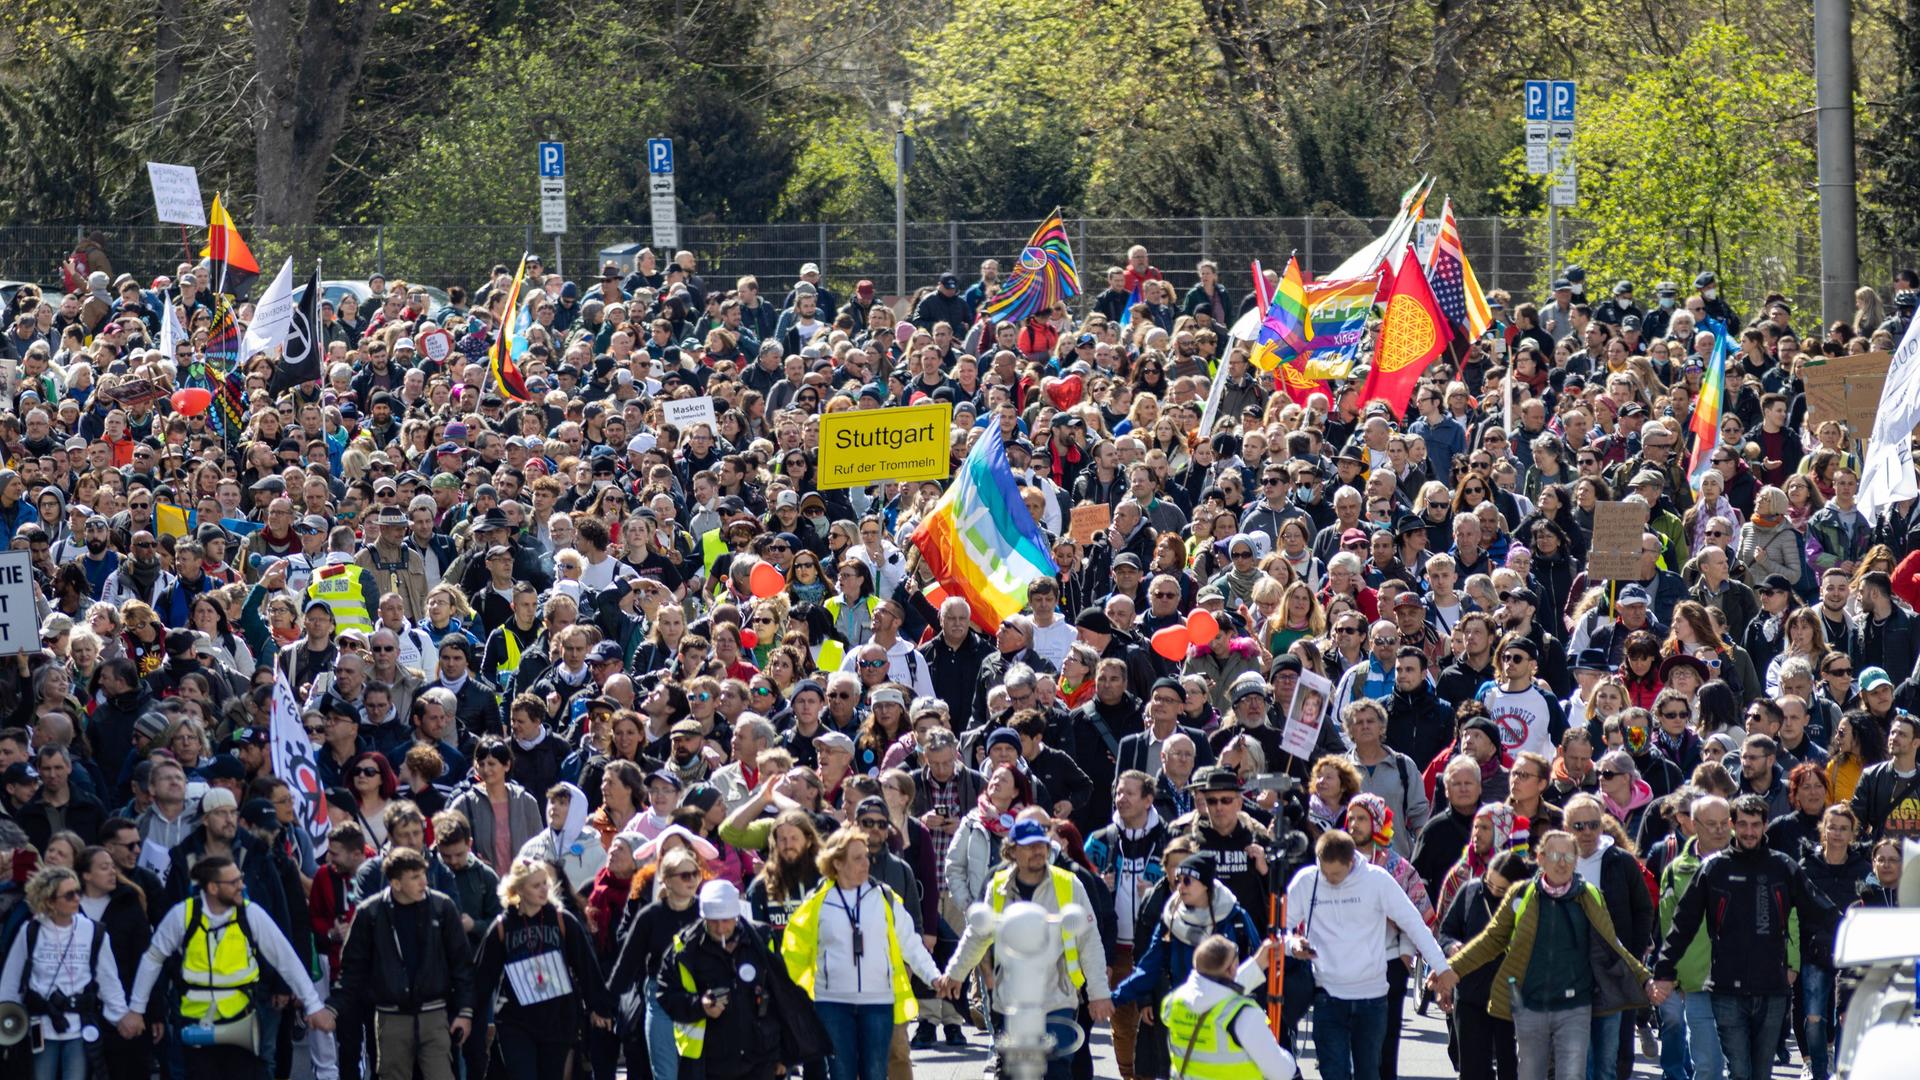 Eine Menschenmenge mit Plakaten auf einer Straße in Stuttgart. Menschen in neongelben Westen stehen vorn, einige Demonstranten schwenken Deutschlandfahnen, eine Regenbogenfahne ist zu sehen, andere halten ein Schild im Stil eines Ortschilds hoch, auf dem Stuttgart steht.